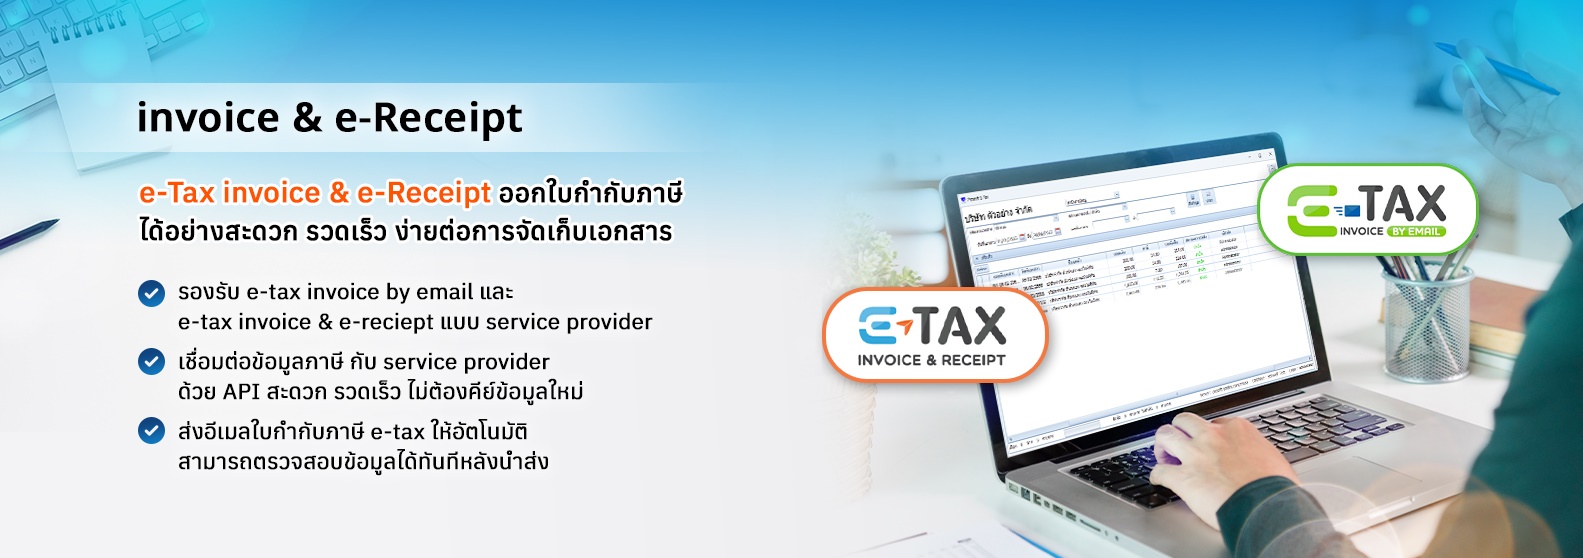 e-Tax invoice & e-Receipt ออกใบกำกับภาษี ได้อย่างสะดวก รวดเร็ว 